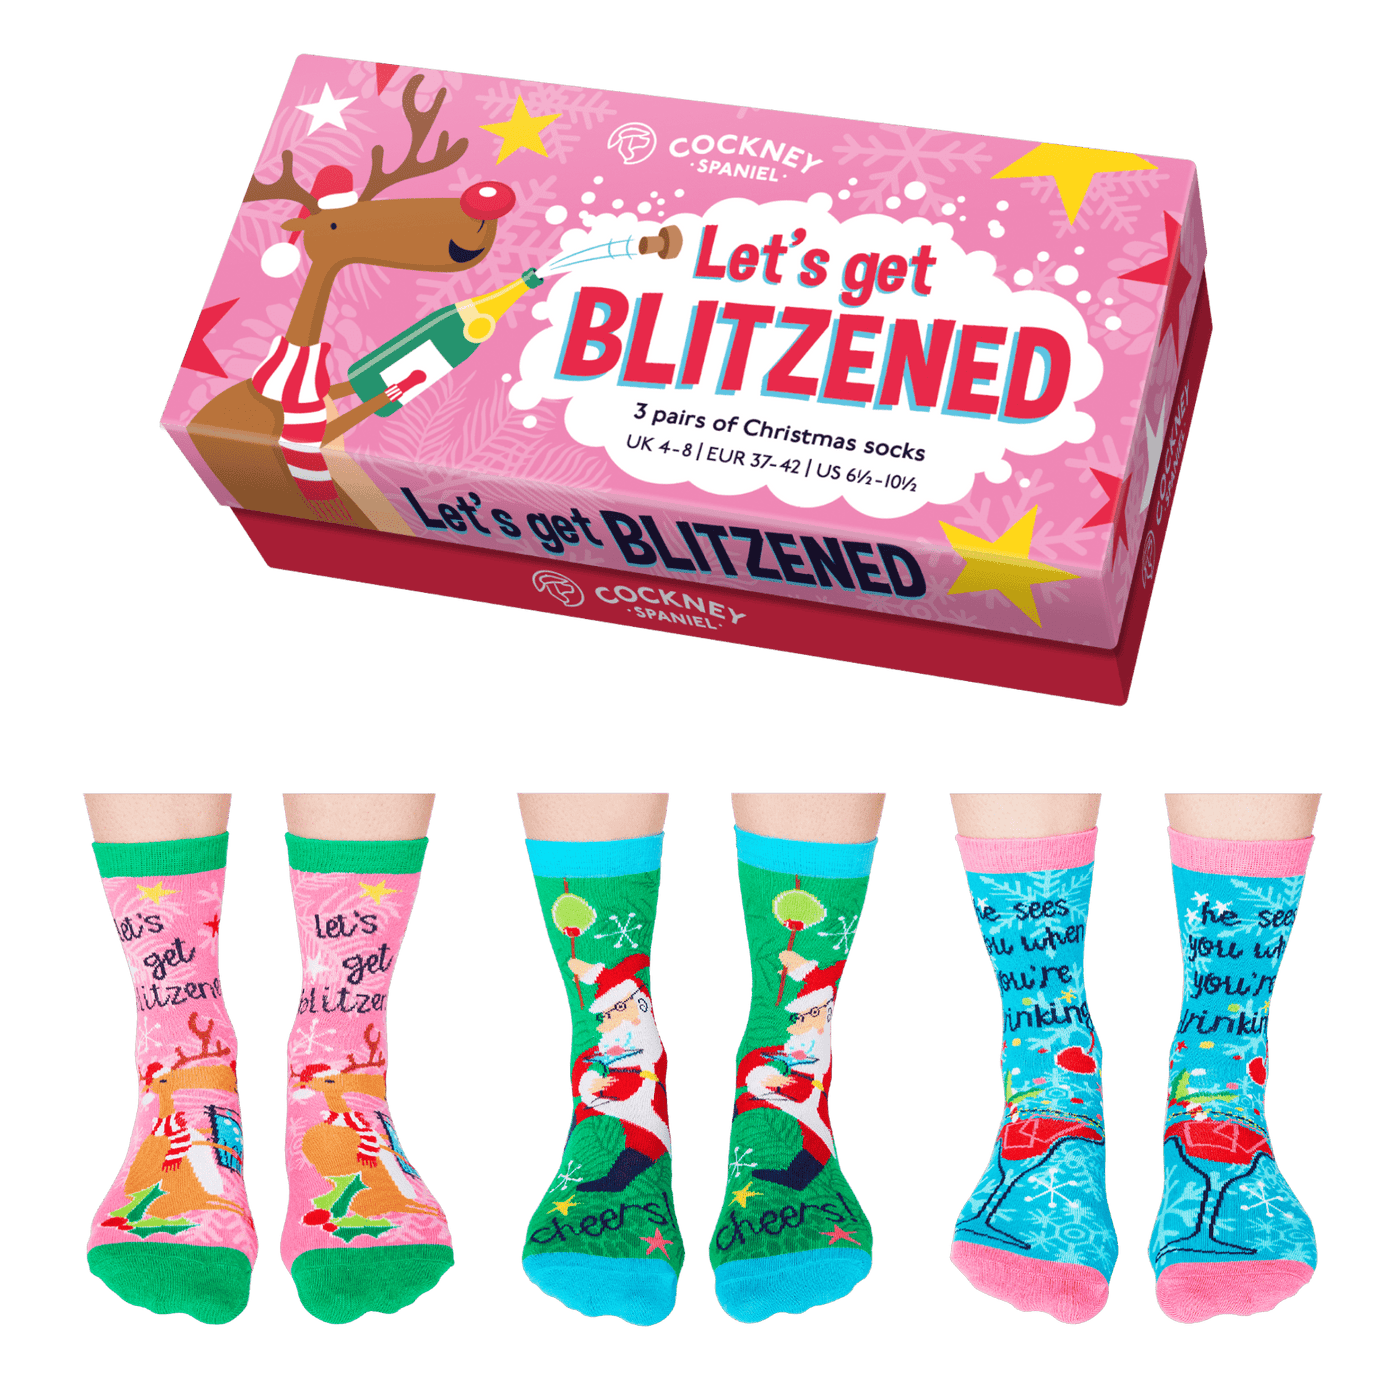 United Odd Socks Socks Let's Get Blitzened 3 Pairs of Christmas Socks